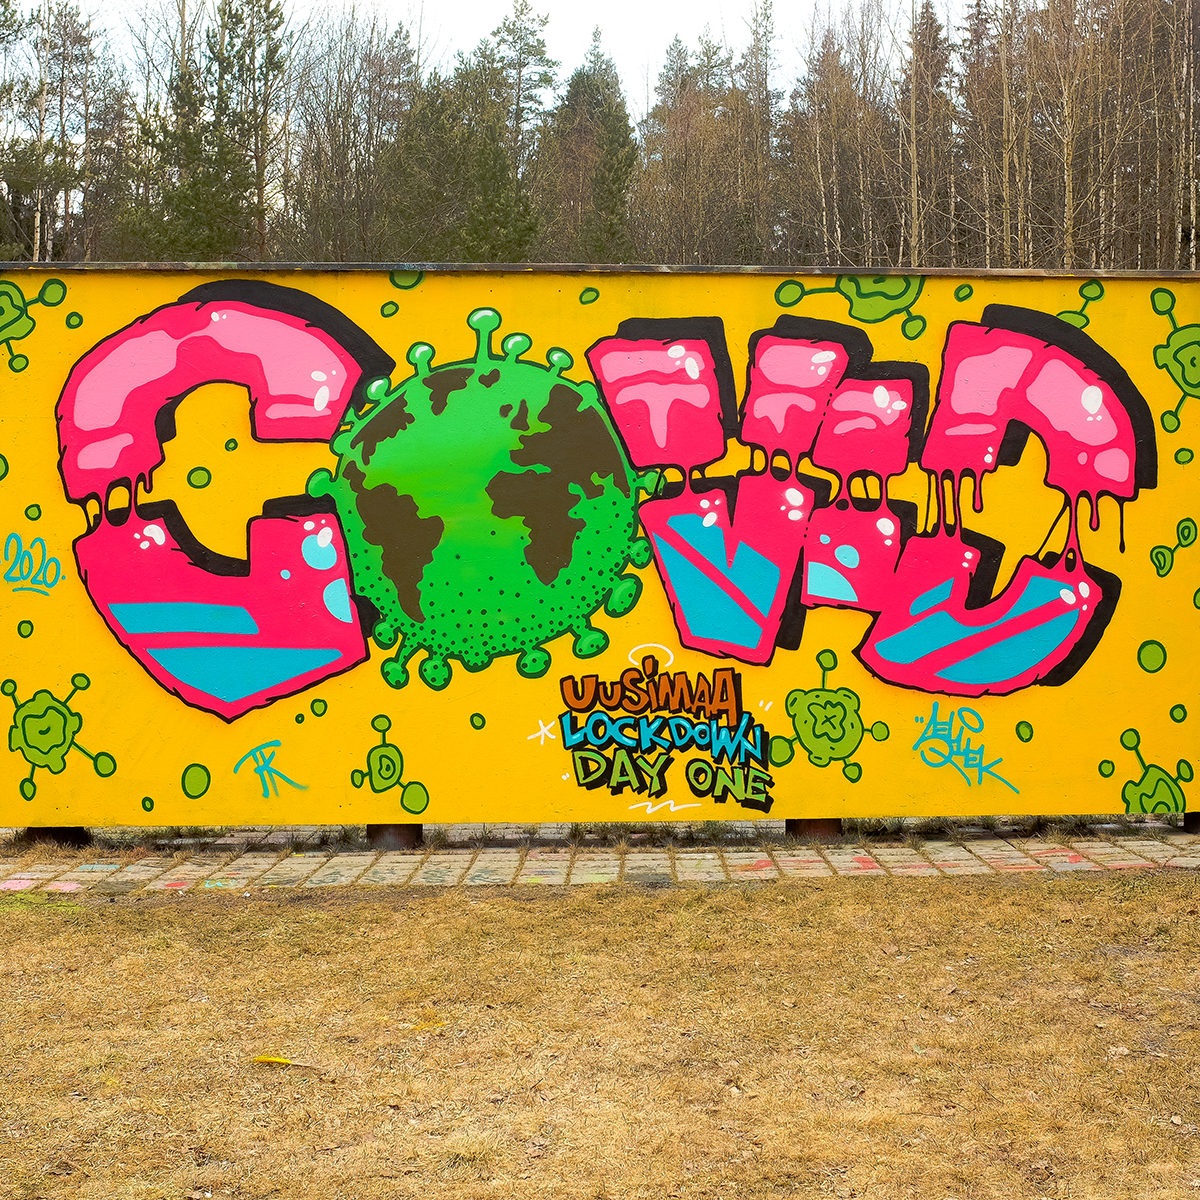 Nimetön / 12.4.2020 Kalasataman graffitiaita